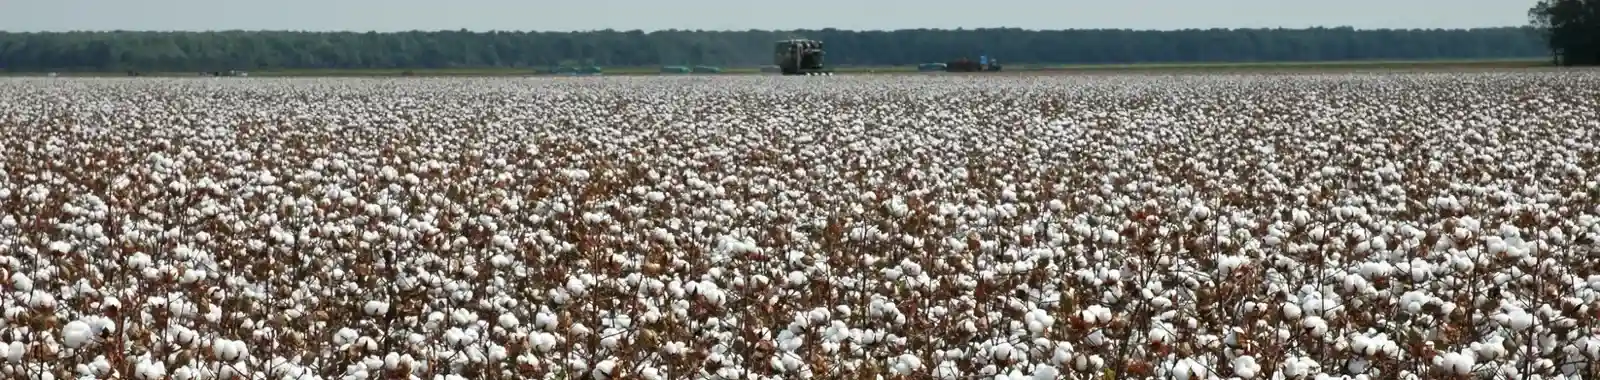 Plantação de algodão com horizonte ao fundo